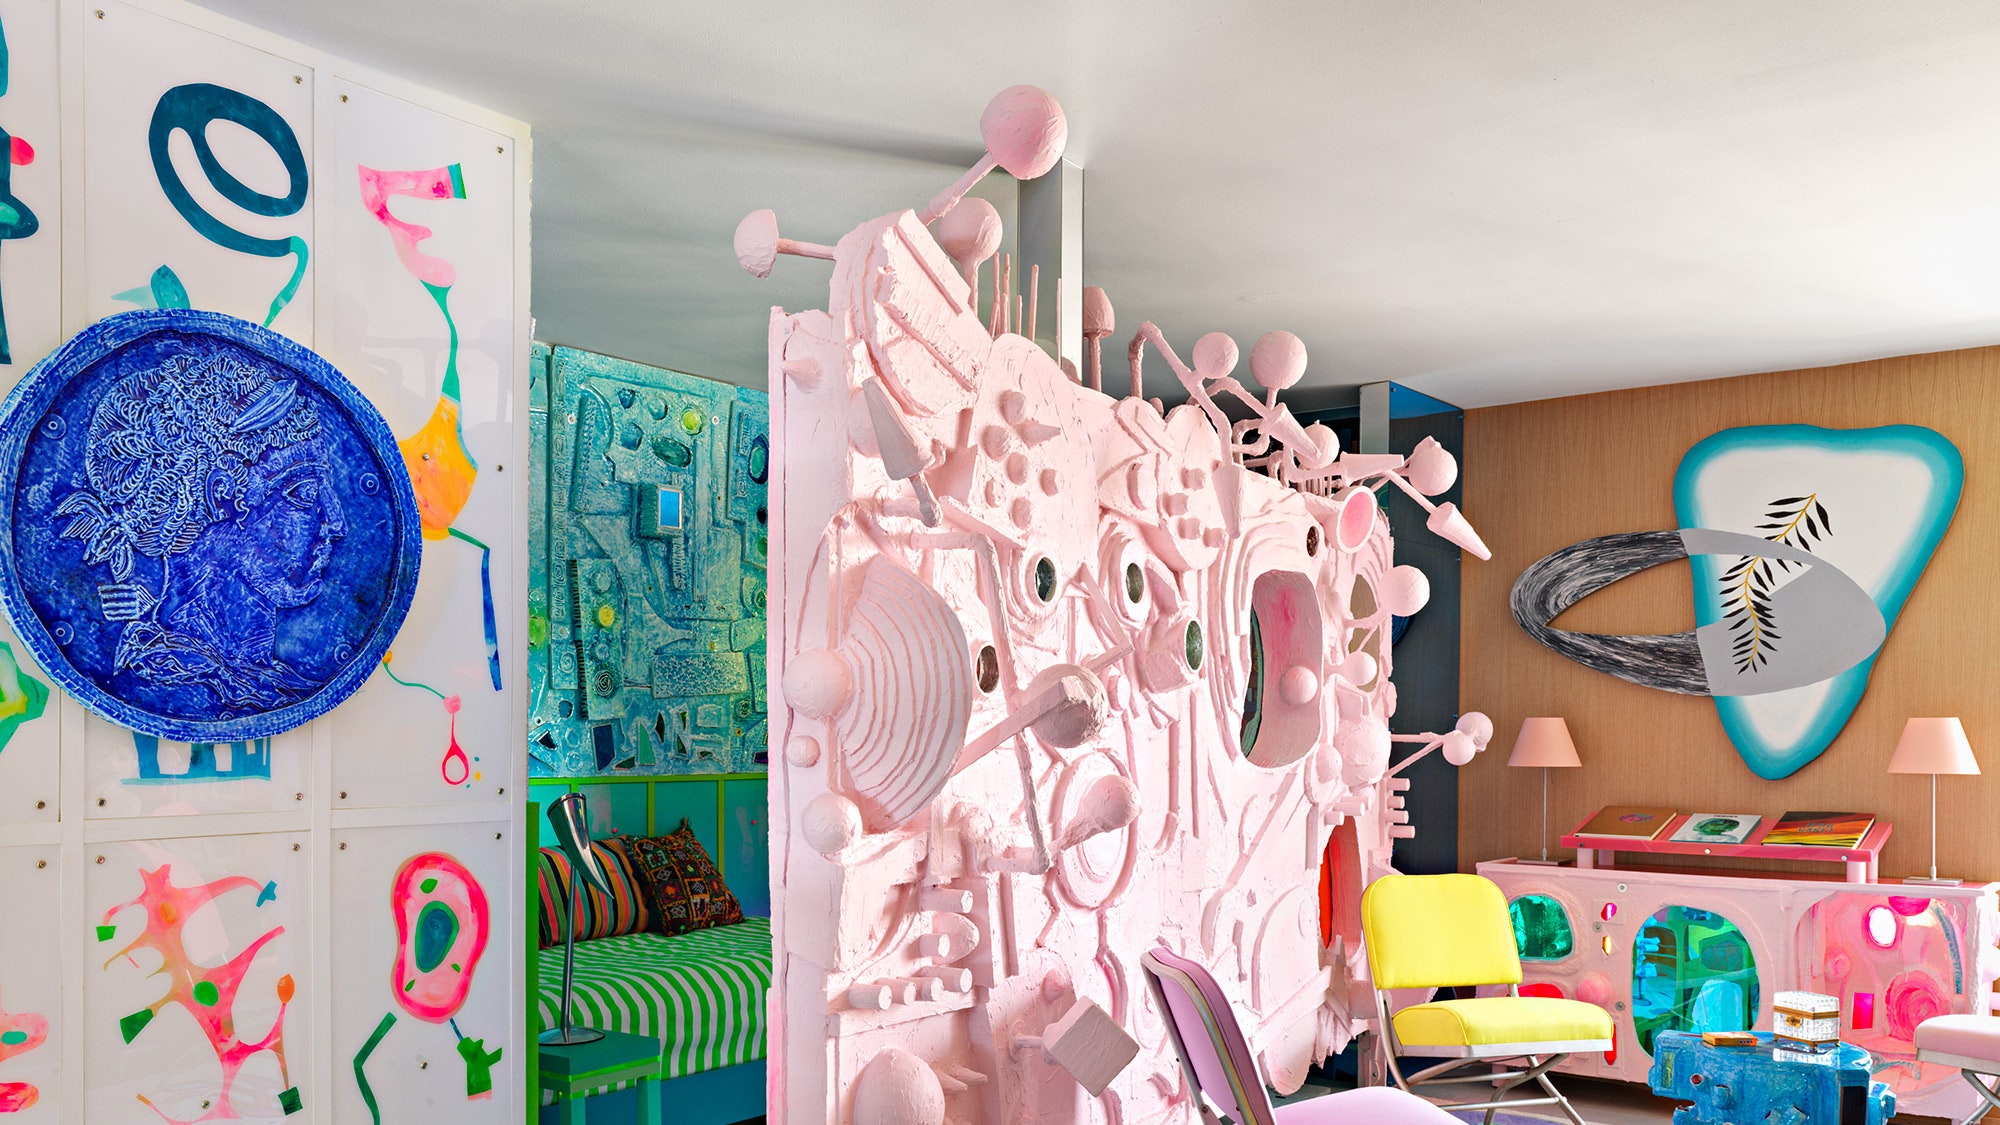 Квартира дизайнера Дага Мейера в НьюЙорке 80 м²